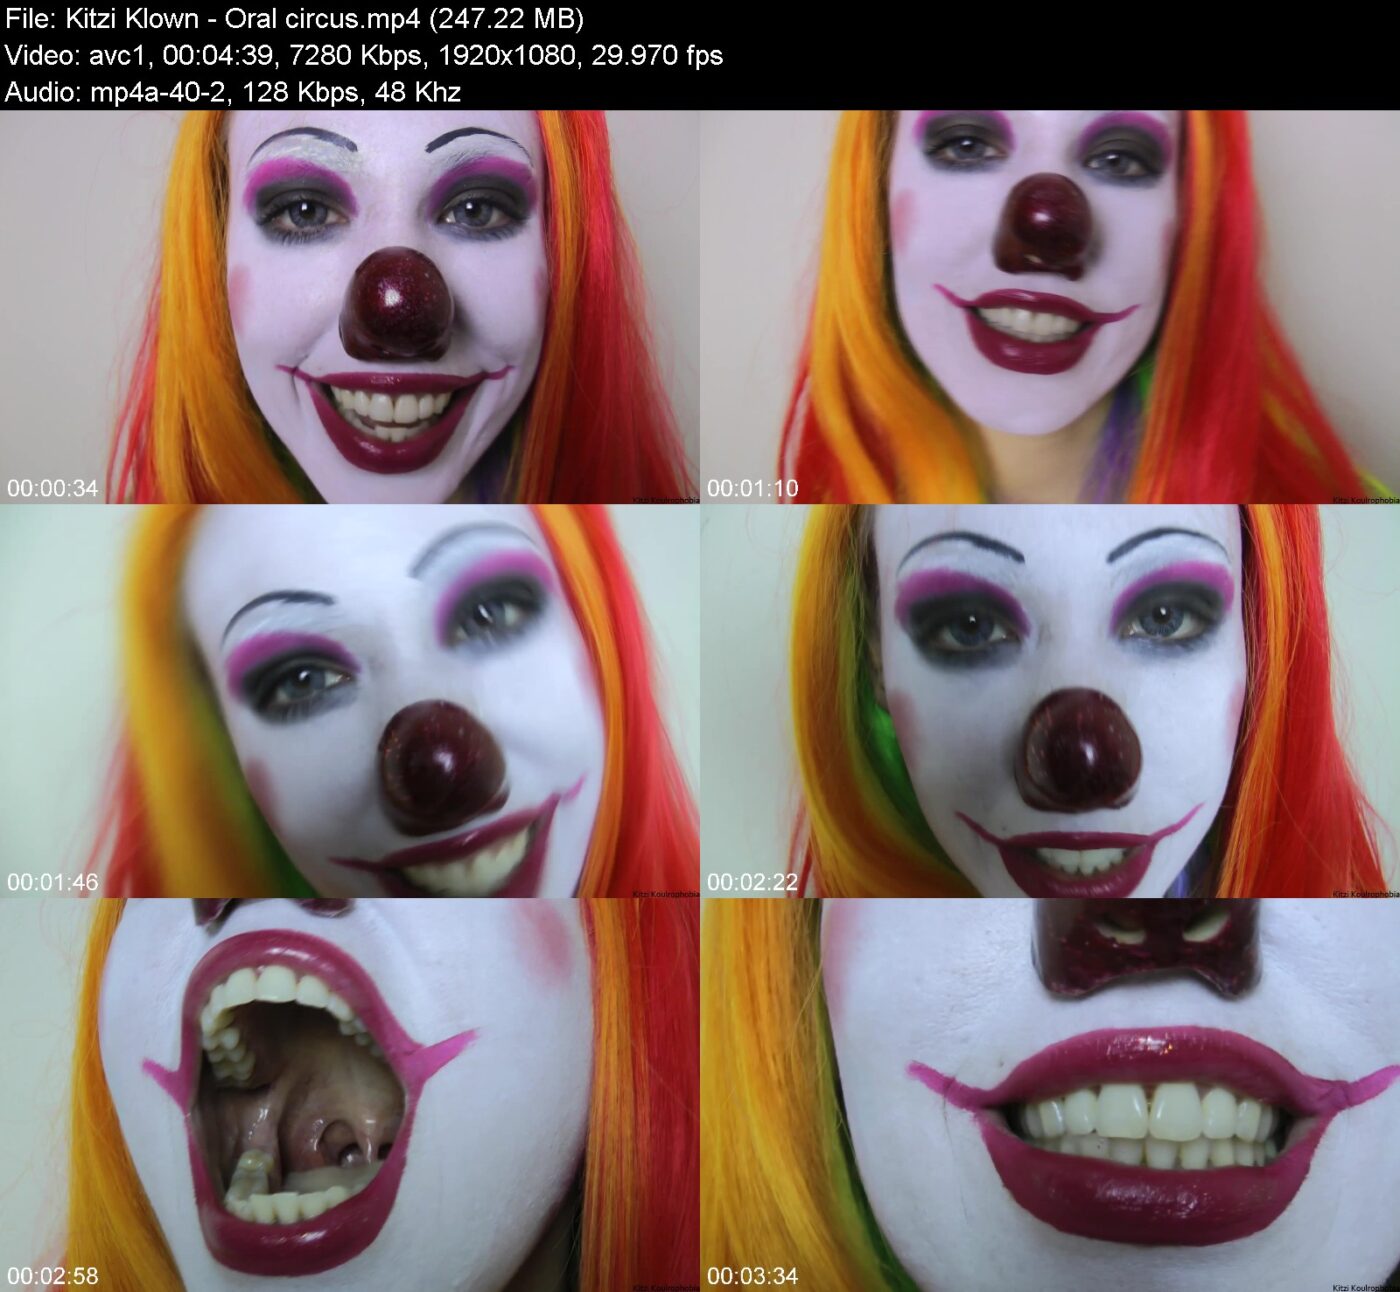 Kitzi Klown in Oral circus